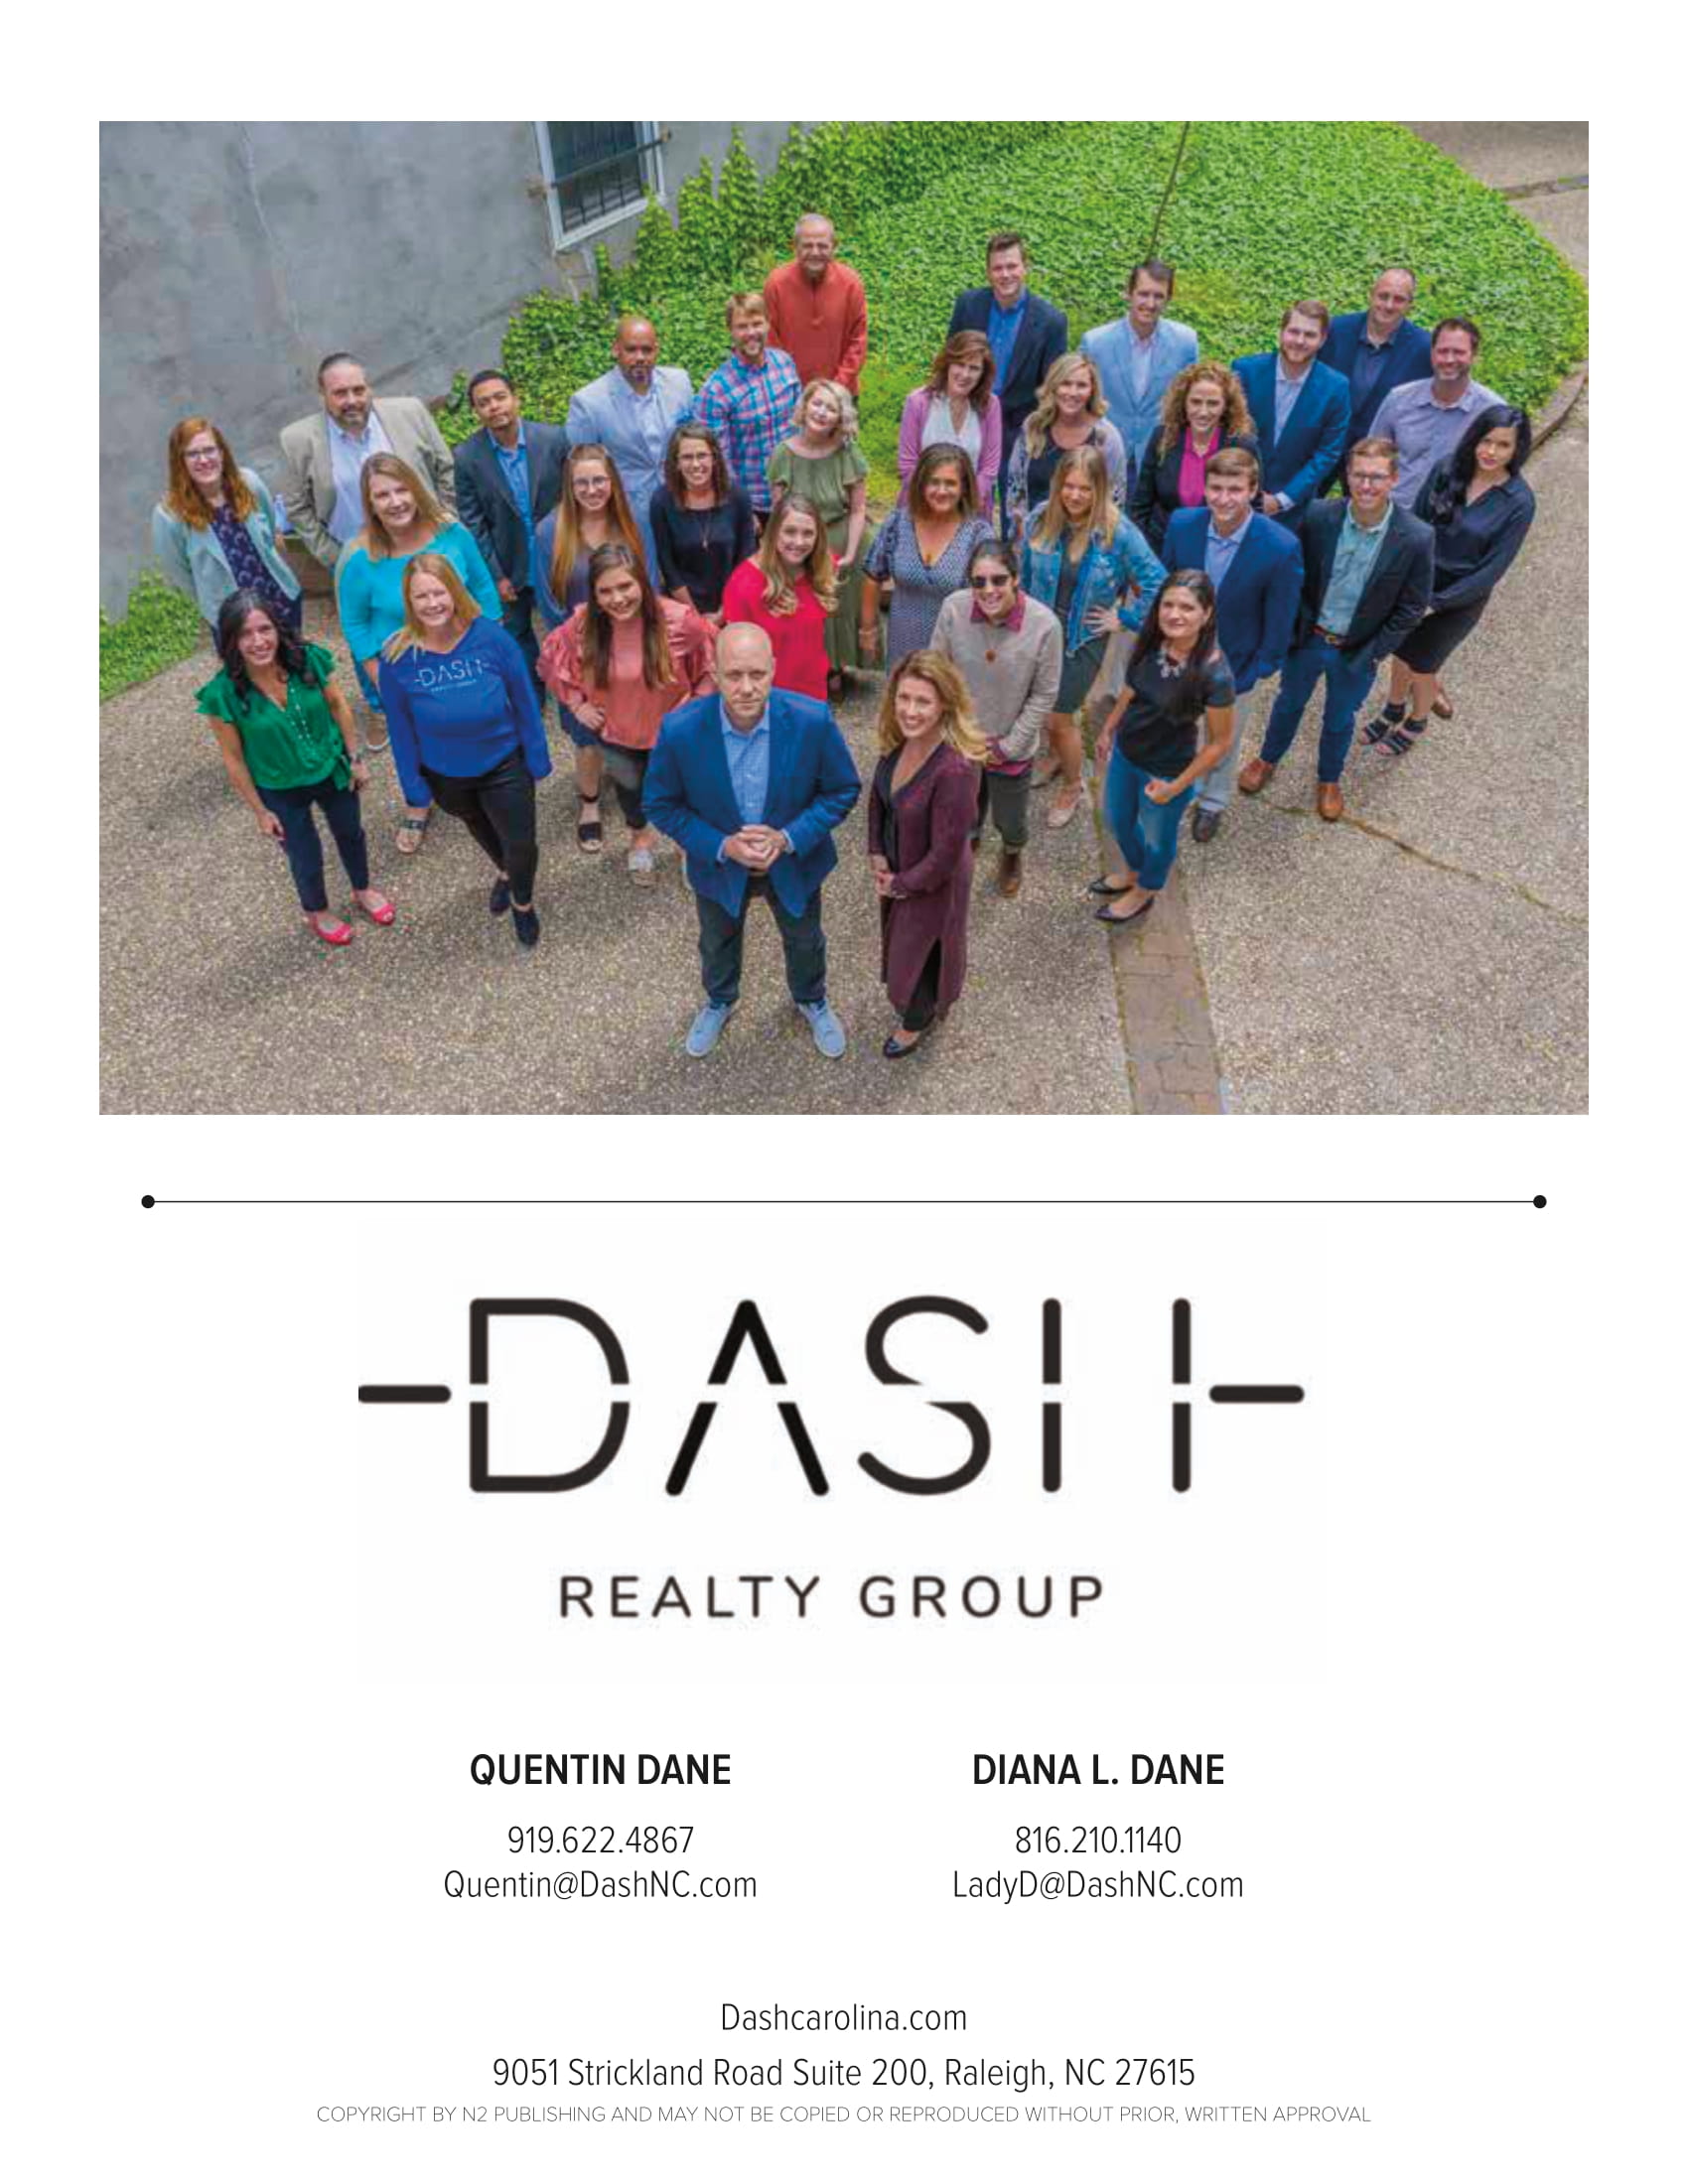 Dash carolina realty group